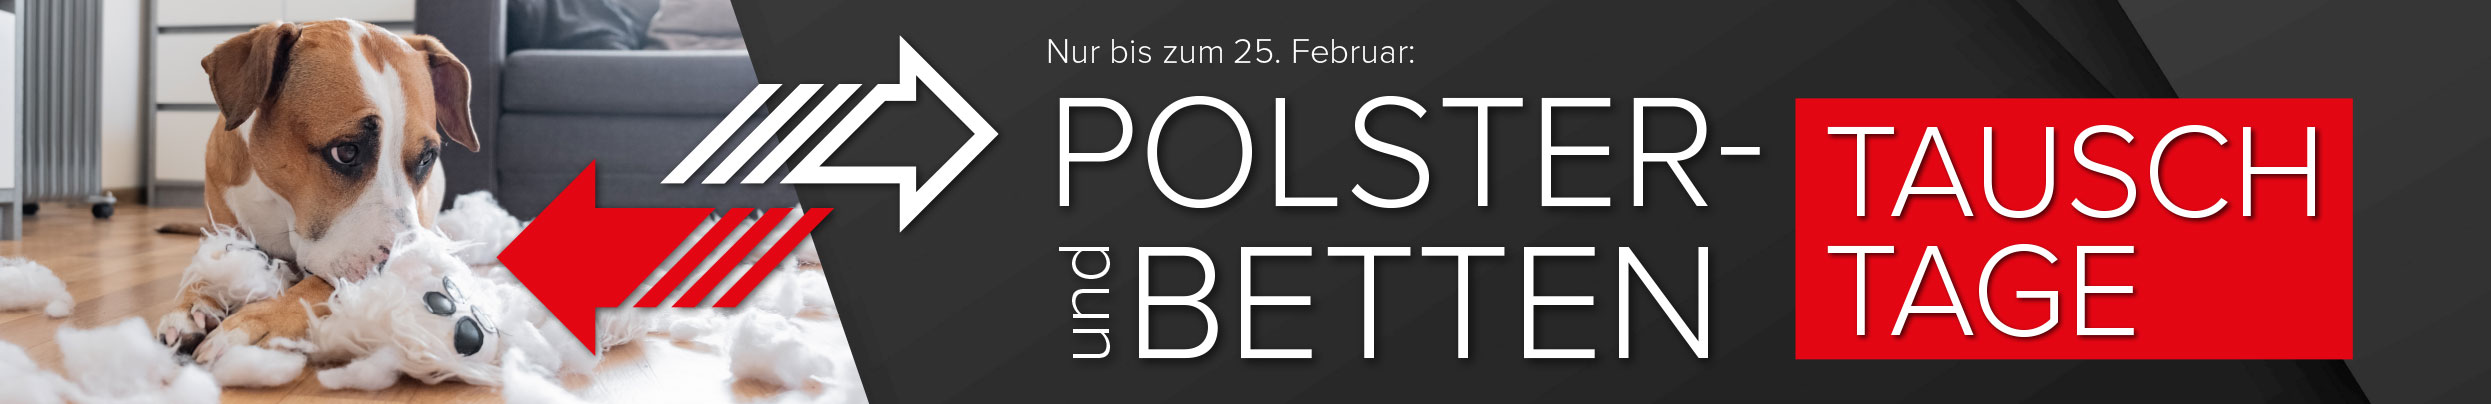 Jetzt sparen! Polster und Bettentauschtage bei Möbel Hartwig - nur bis zum 11. Februar!